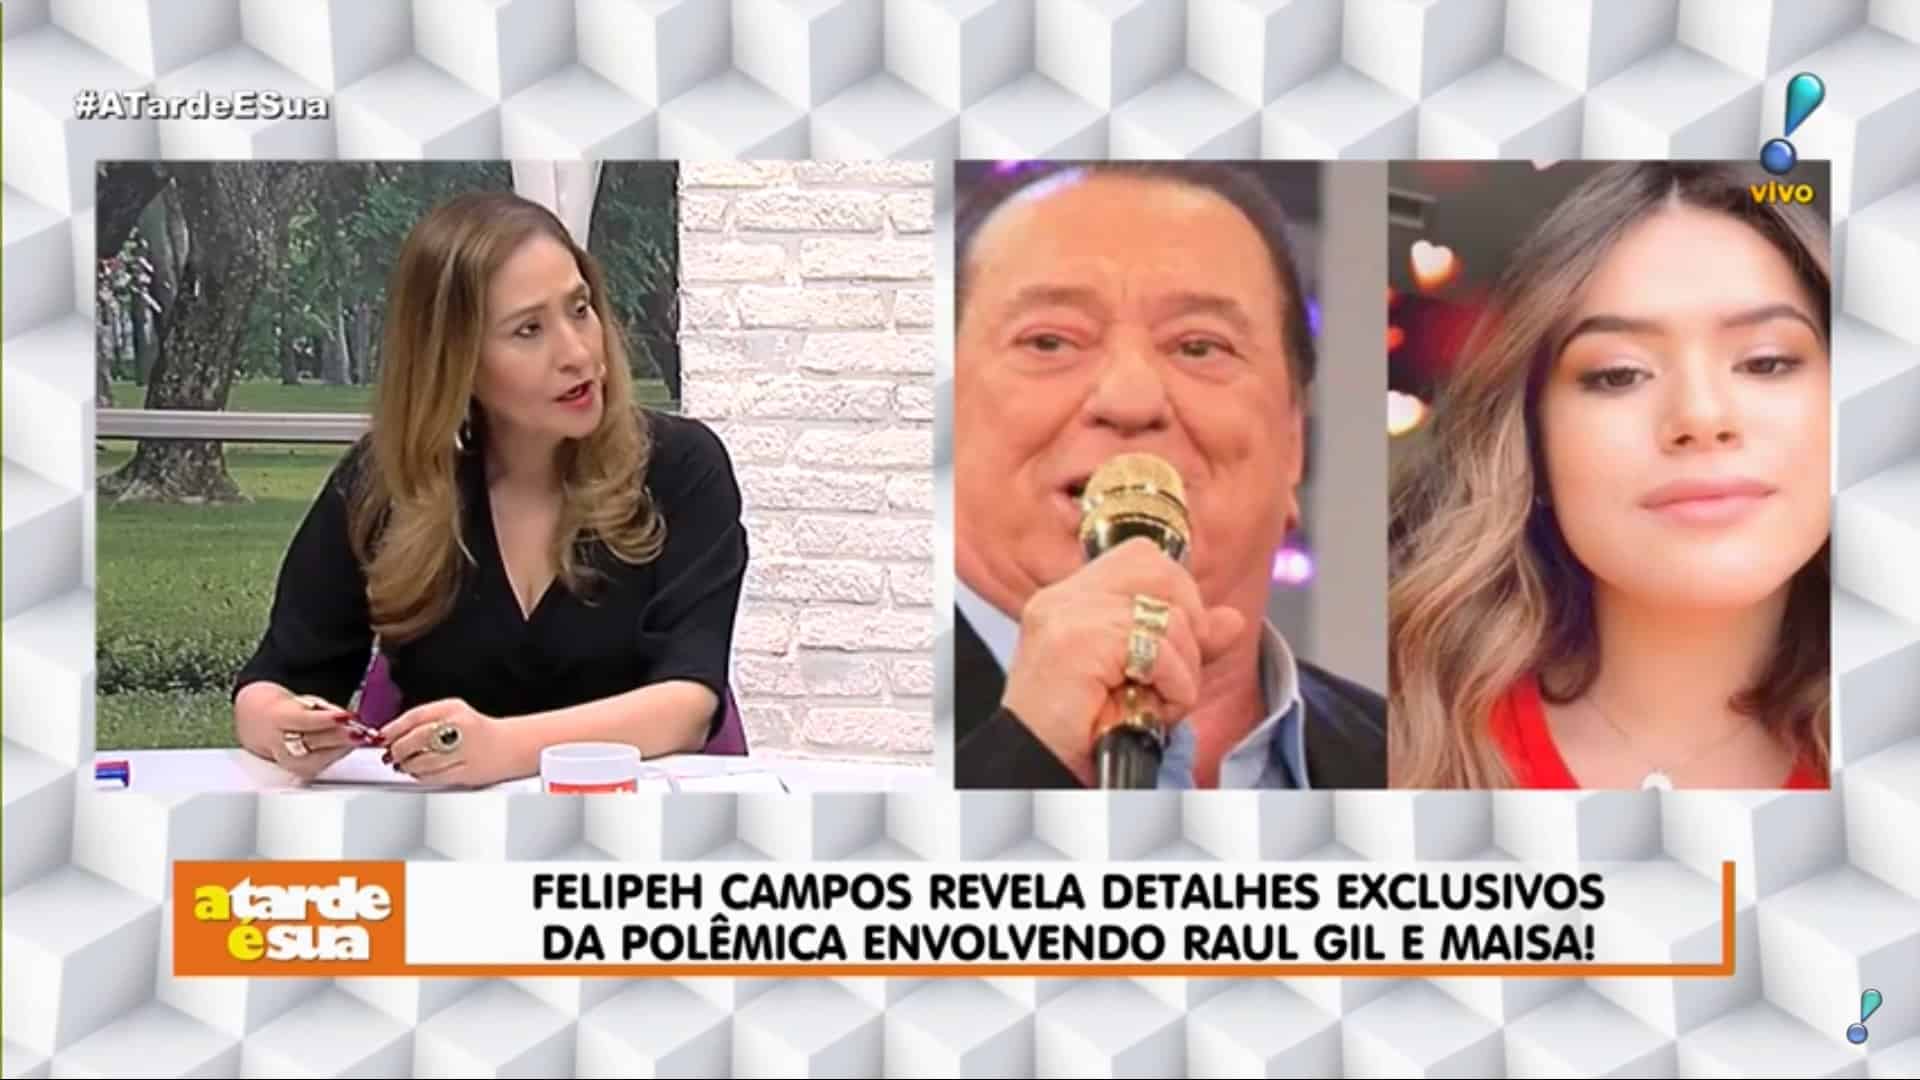 Sonia Abrão, Thiago Rocha e Felipeh Campos saem em defesa de Raul Gil depois de falso áudio